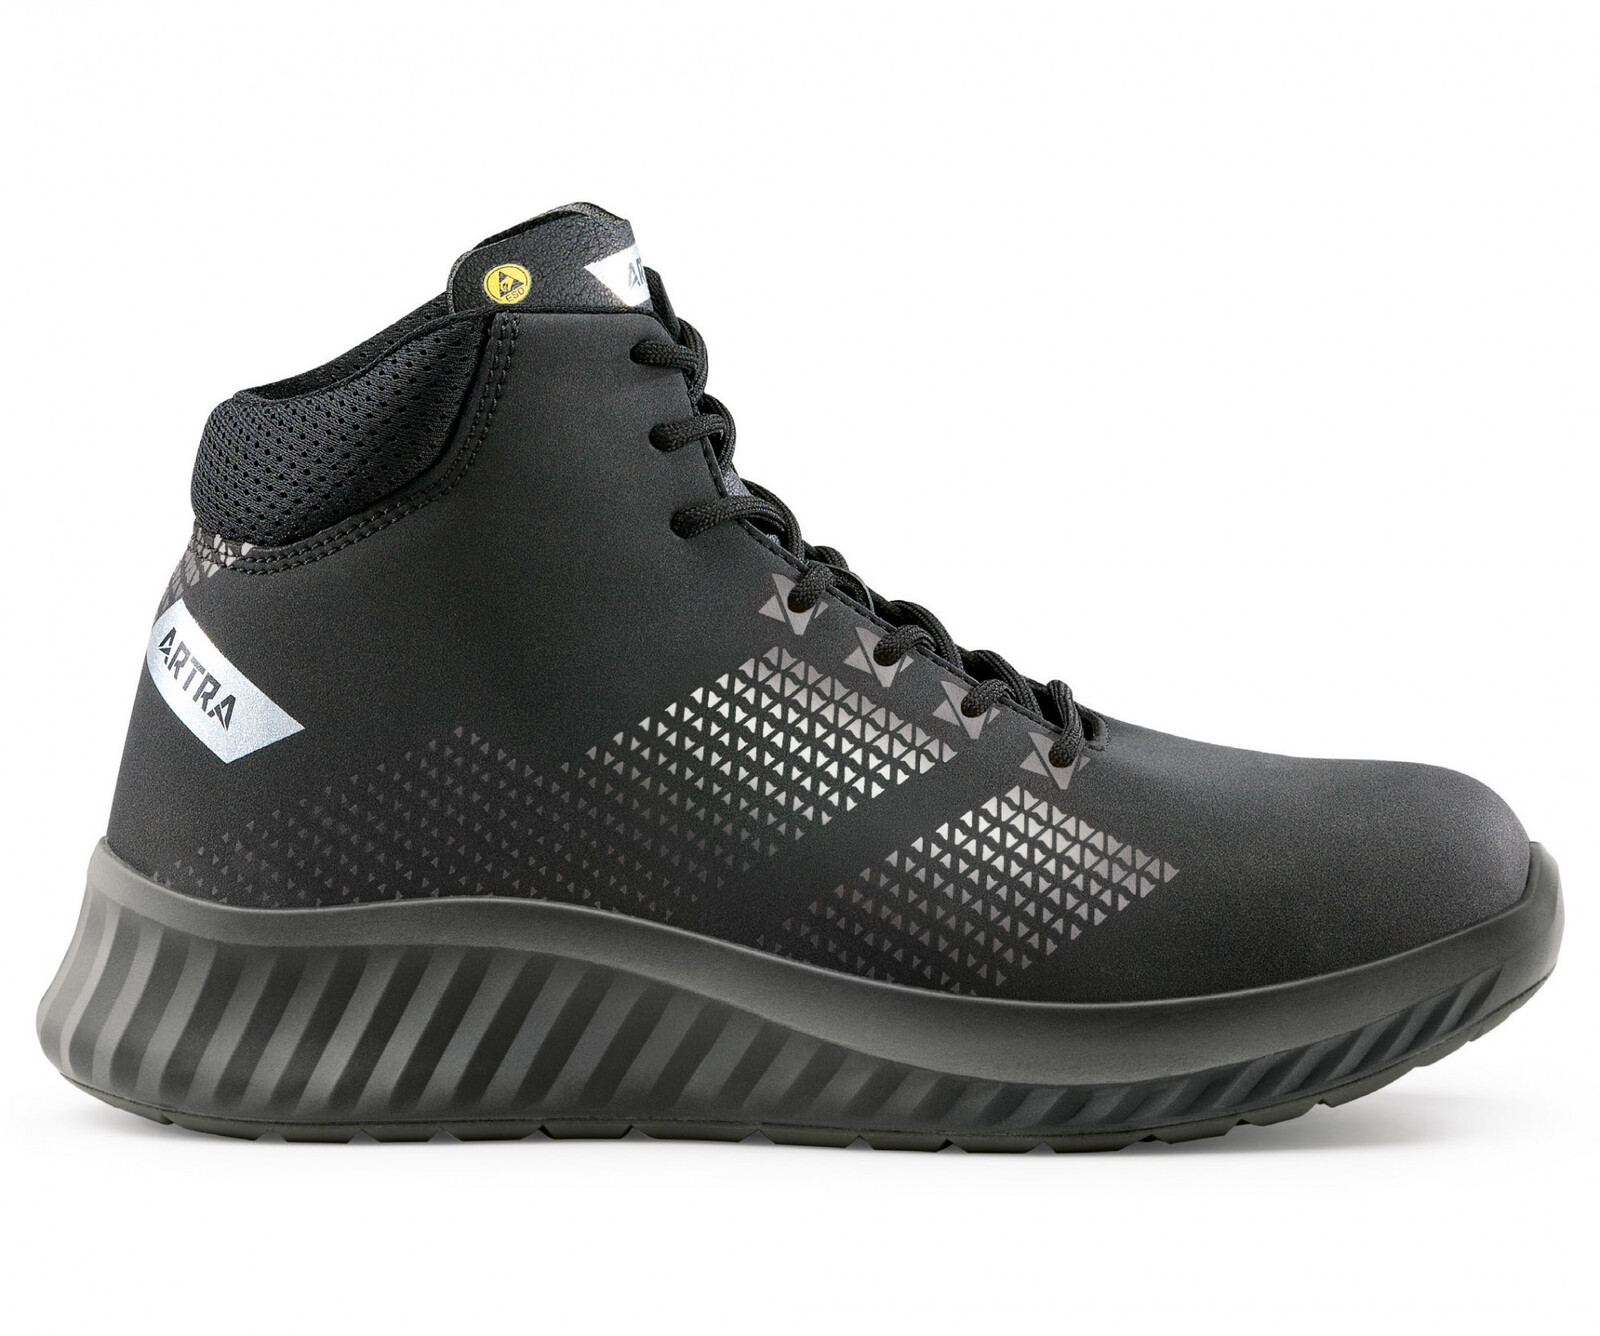 Bezpečnostná členková obuv Artra Aroserio 750 616560 S3 SRC ESD - veľkosť: 36, farba: čierna/sivá